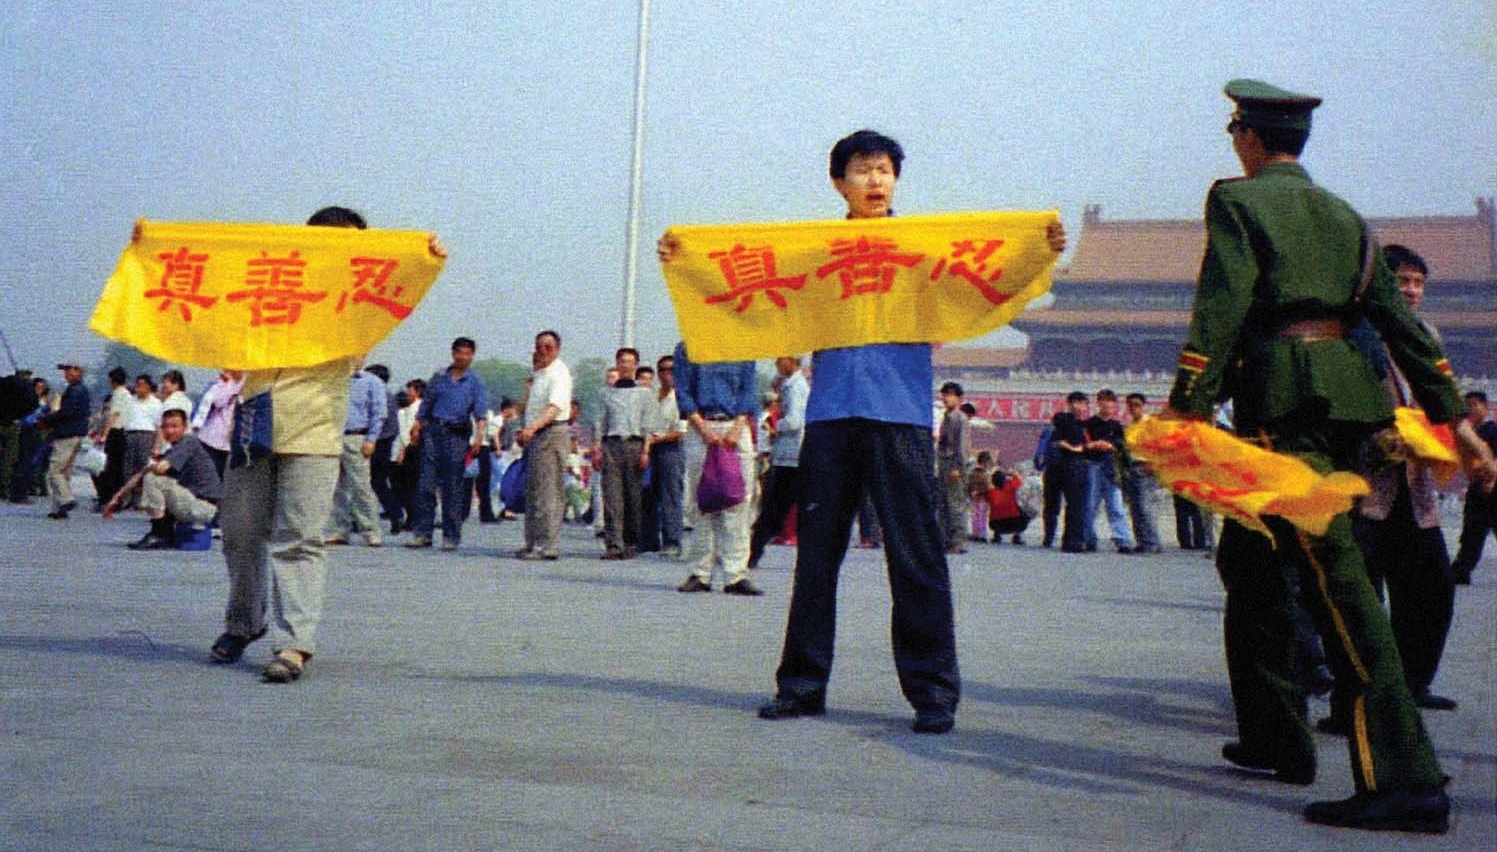 Persecution of Falun Dafa in China